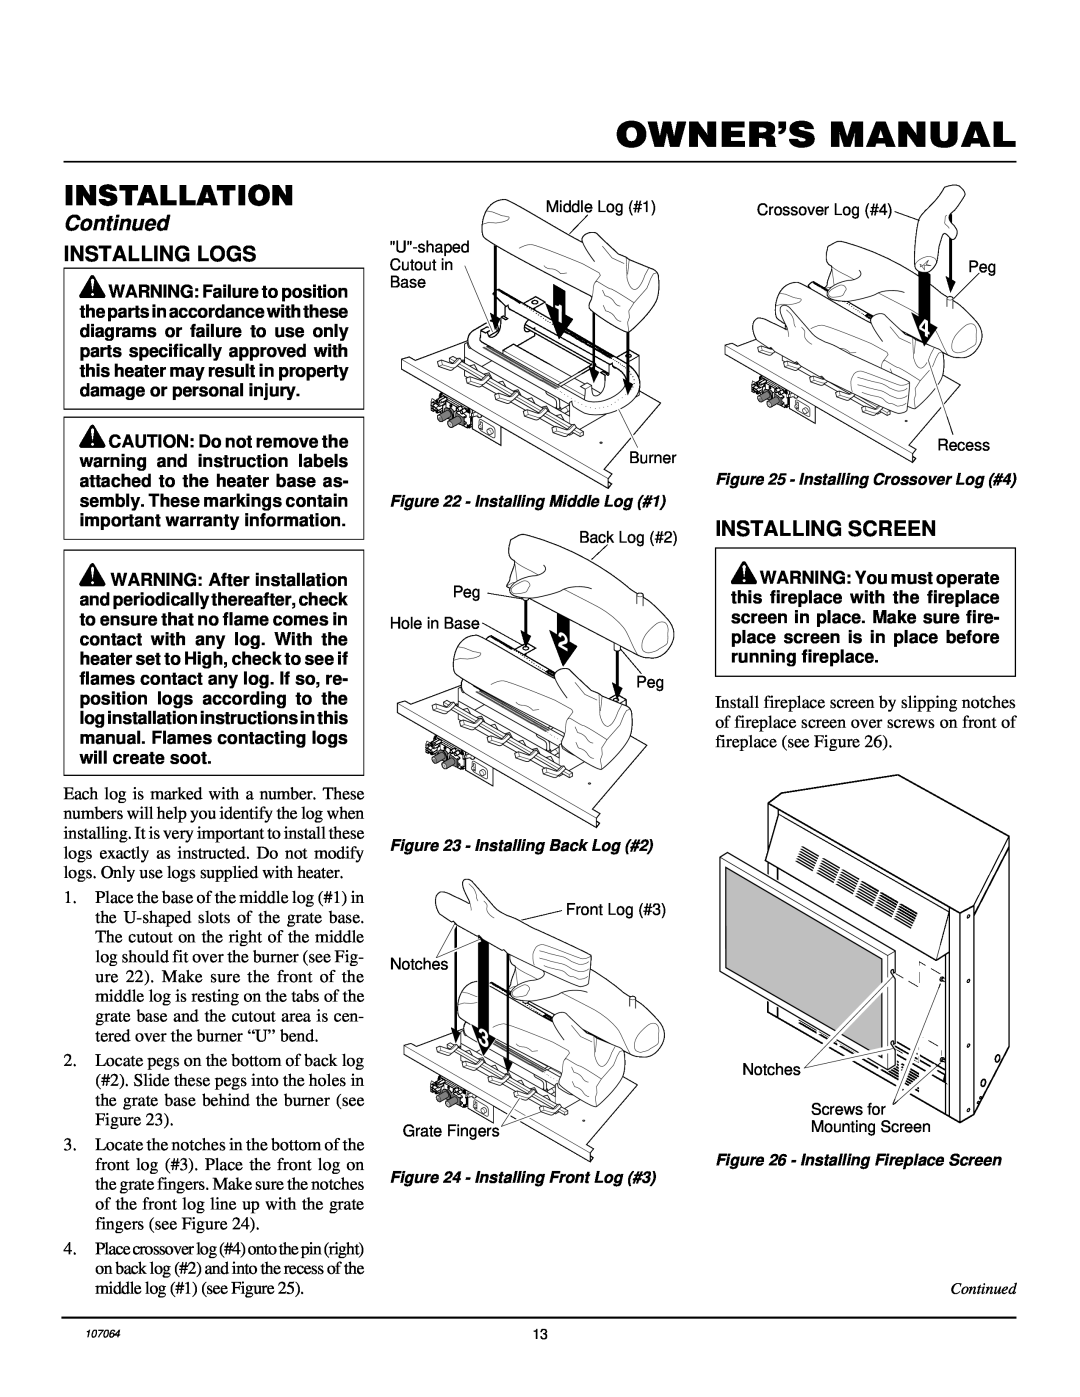 Desa LFP33PRA installation manual Installing Logs, Installing Screen, Installation, Continued 